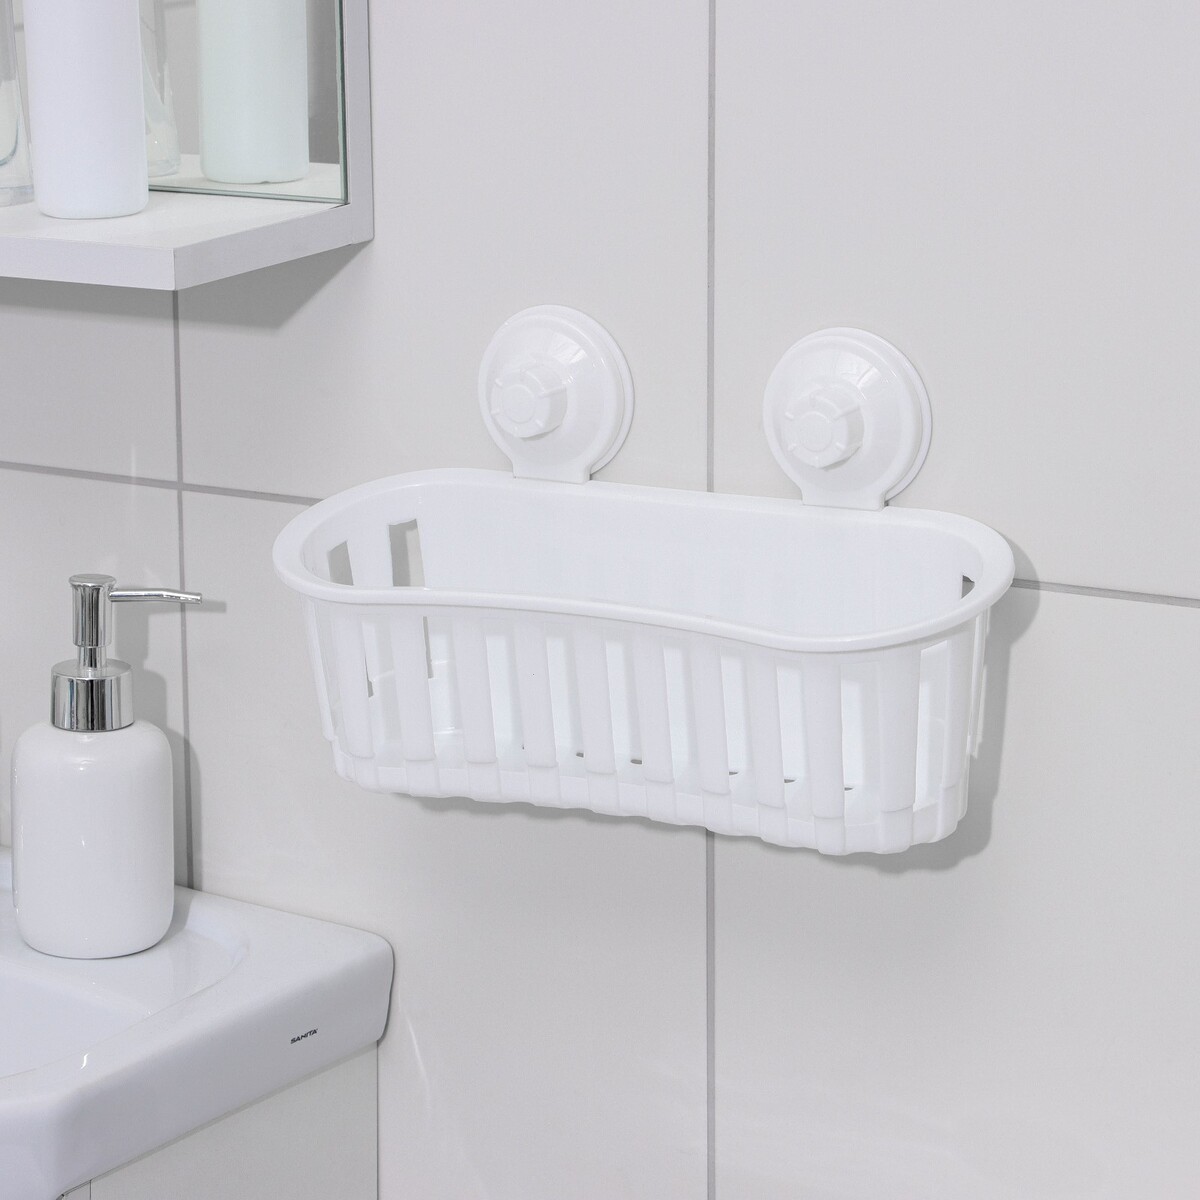 Держатель для ванных принадлежностей на вакуммных присосках, 30×11×9 см, цвет белый держатель для ванных и кухонных принадлежностей 17×7×11 см серый